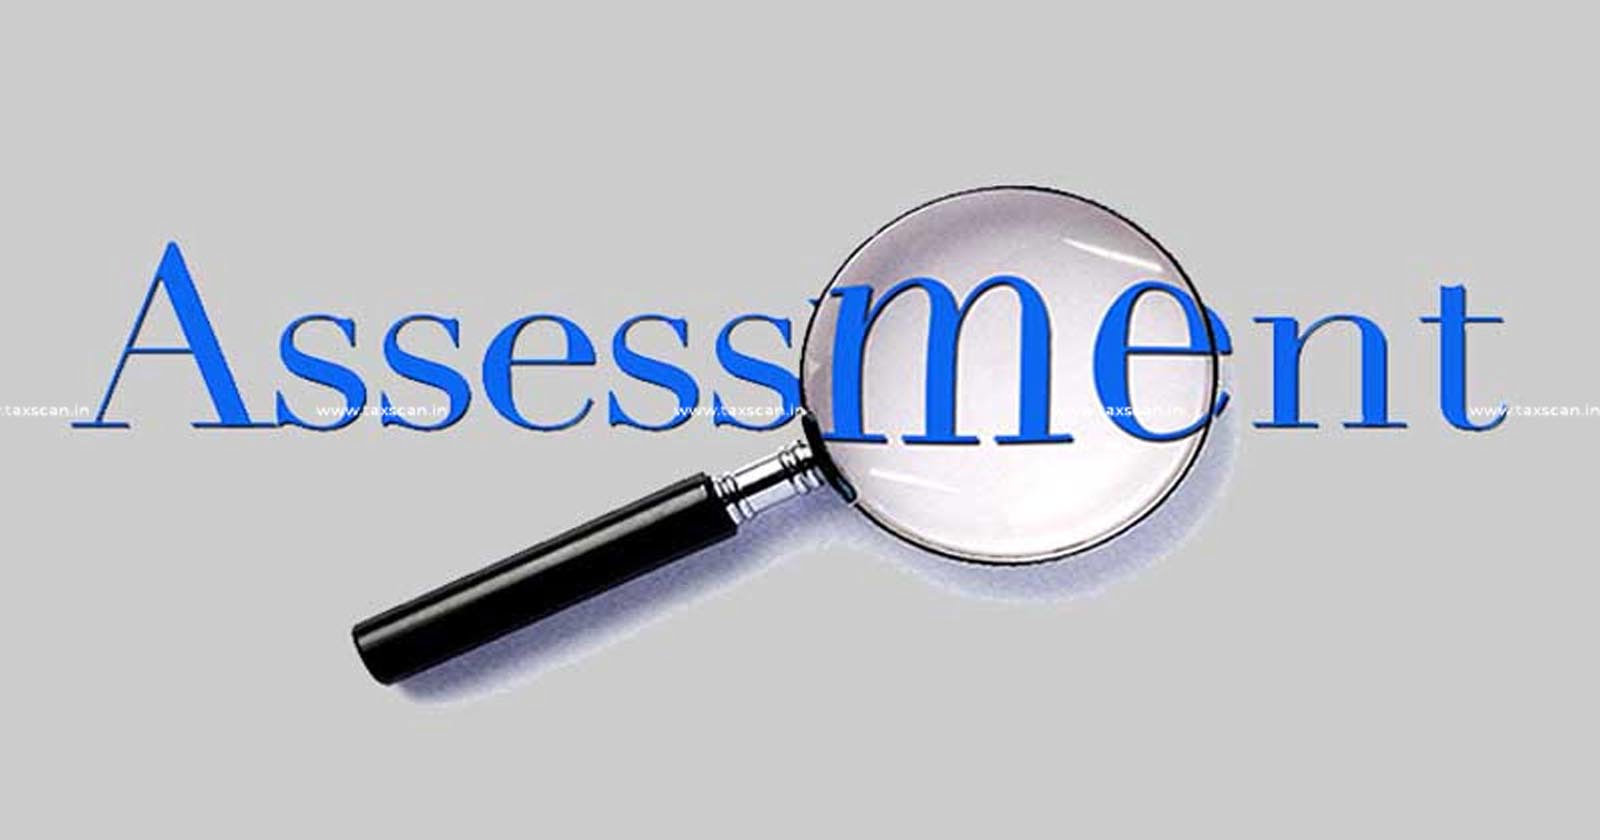 ITAT - ITAT Delhi - Pending Assessment - Income Tax - Assessment - ITAT Delhi ruling on pending assessment - TAXSCAN